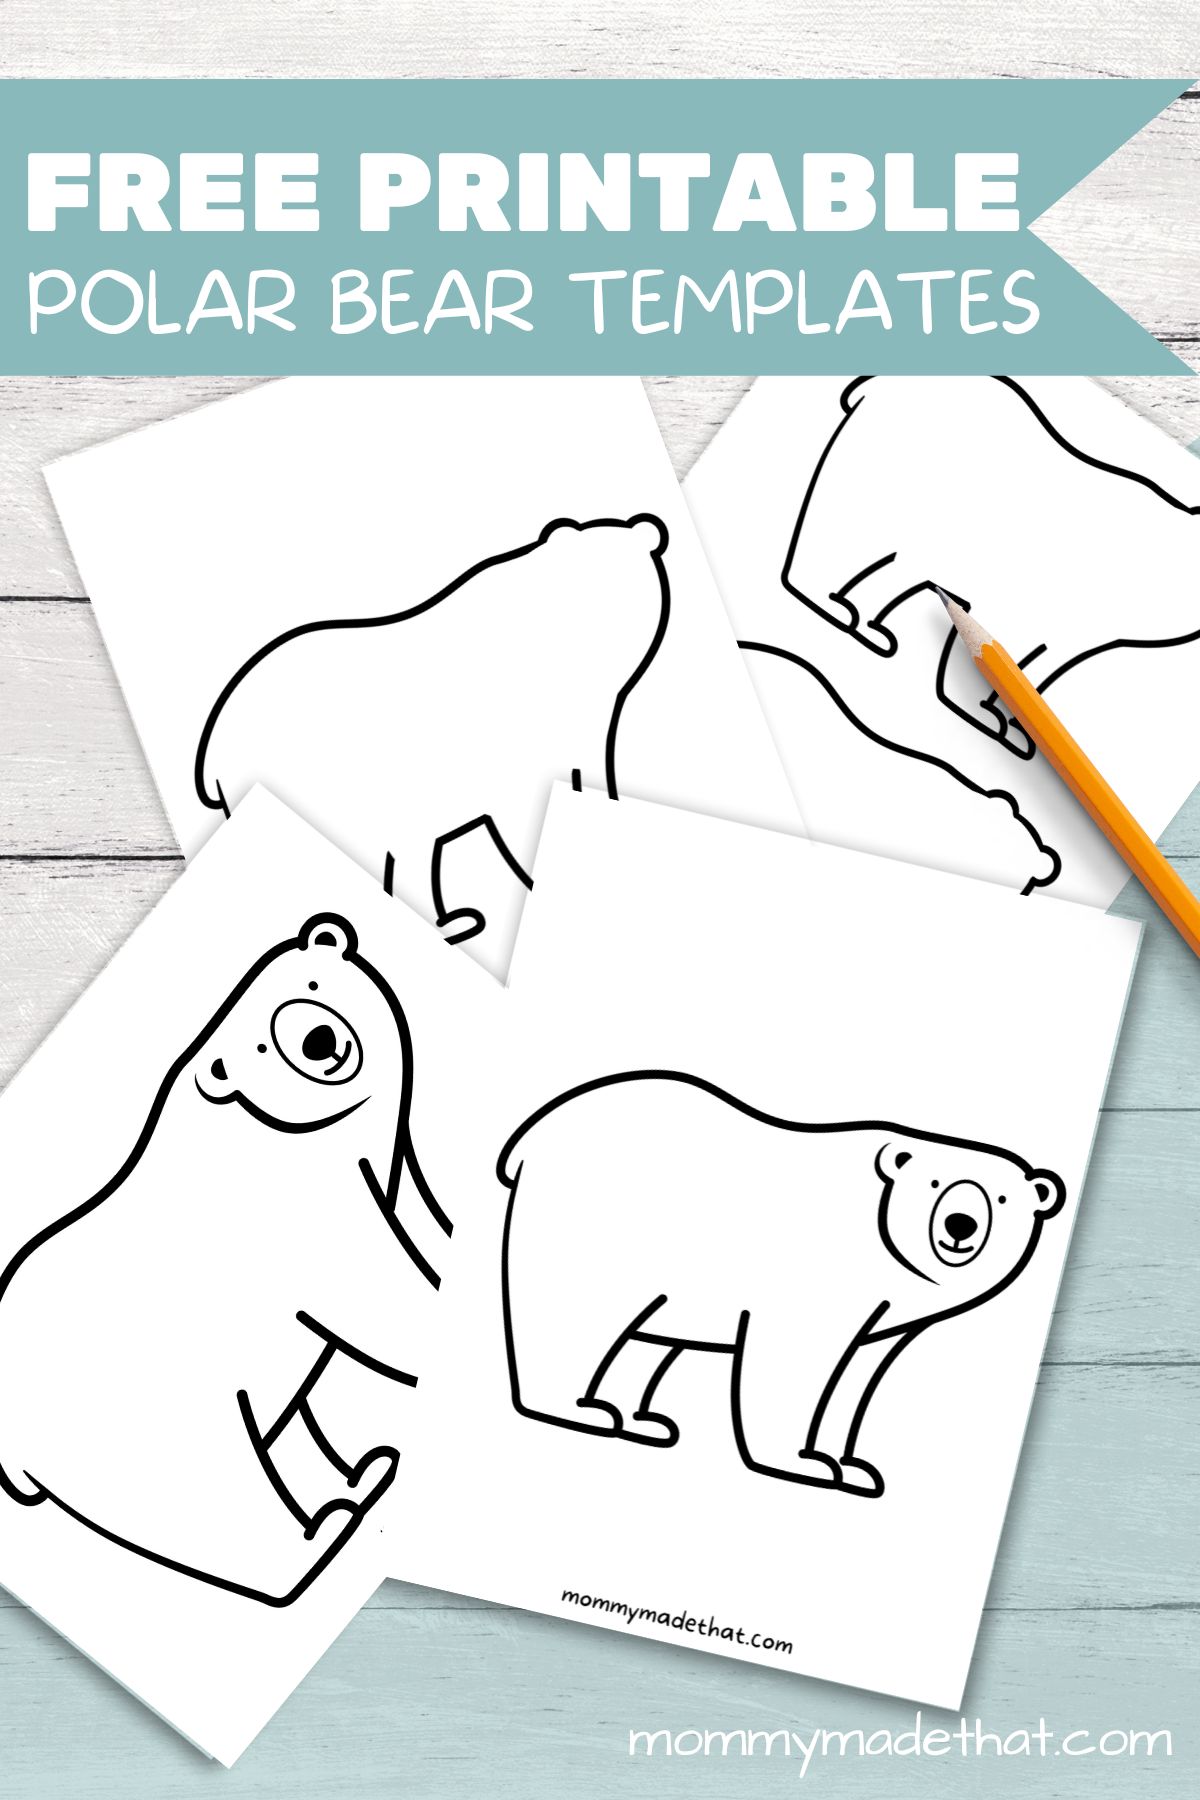 Adorable polar bear templates free printables